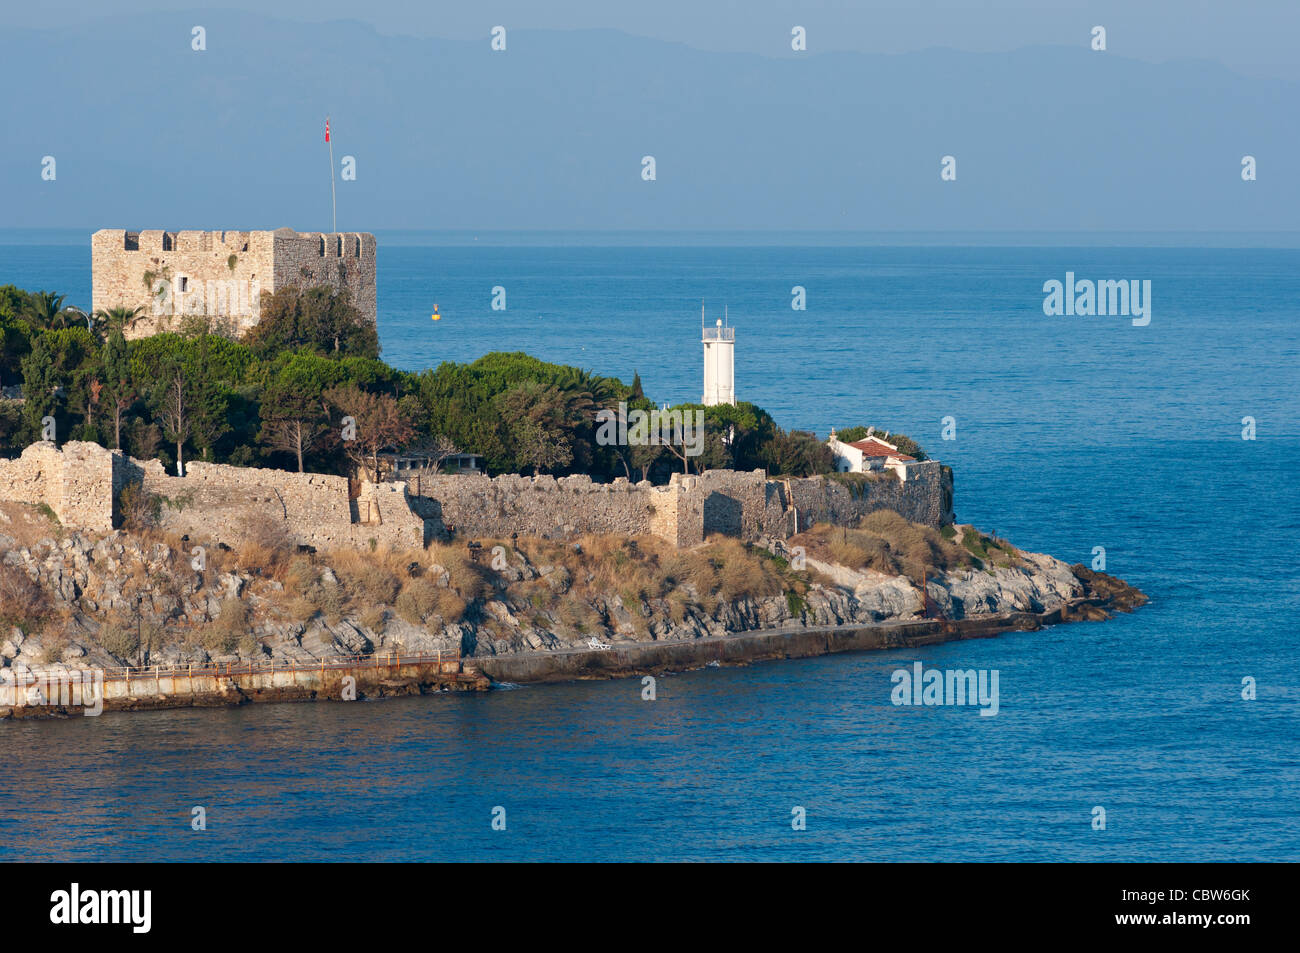 Türkei, Kusadasi. Kleine Insel der Guvercin Adasi (aka Taube Island) im Ägäischen Meer, Festung aus dem 14.-15. Jahrhundert. Stockfoto